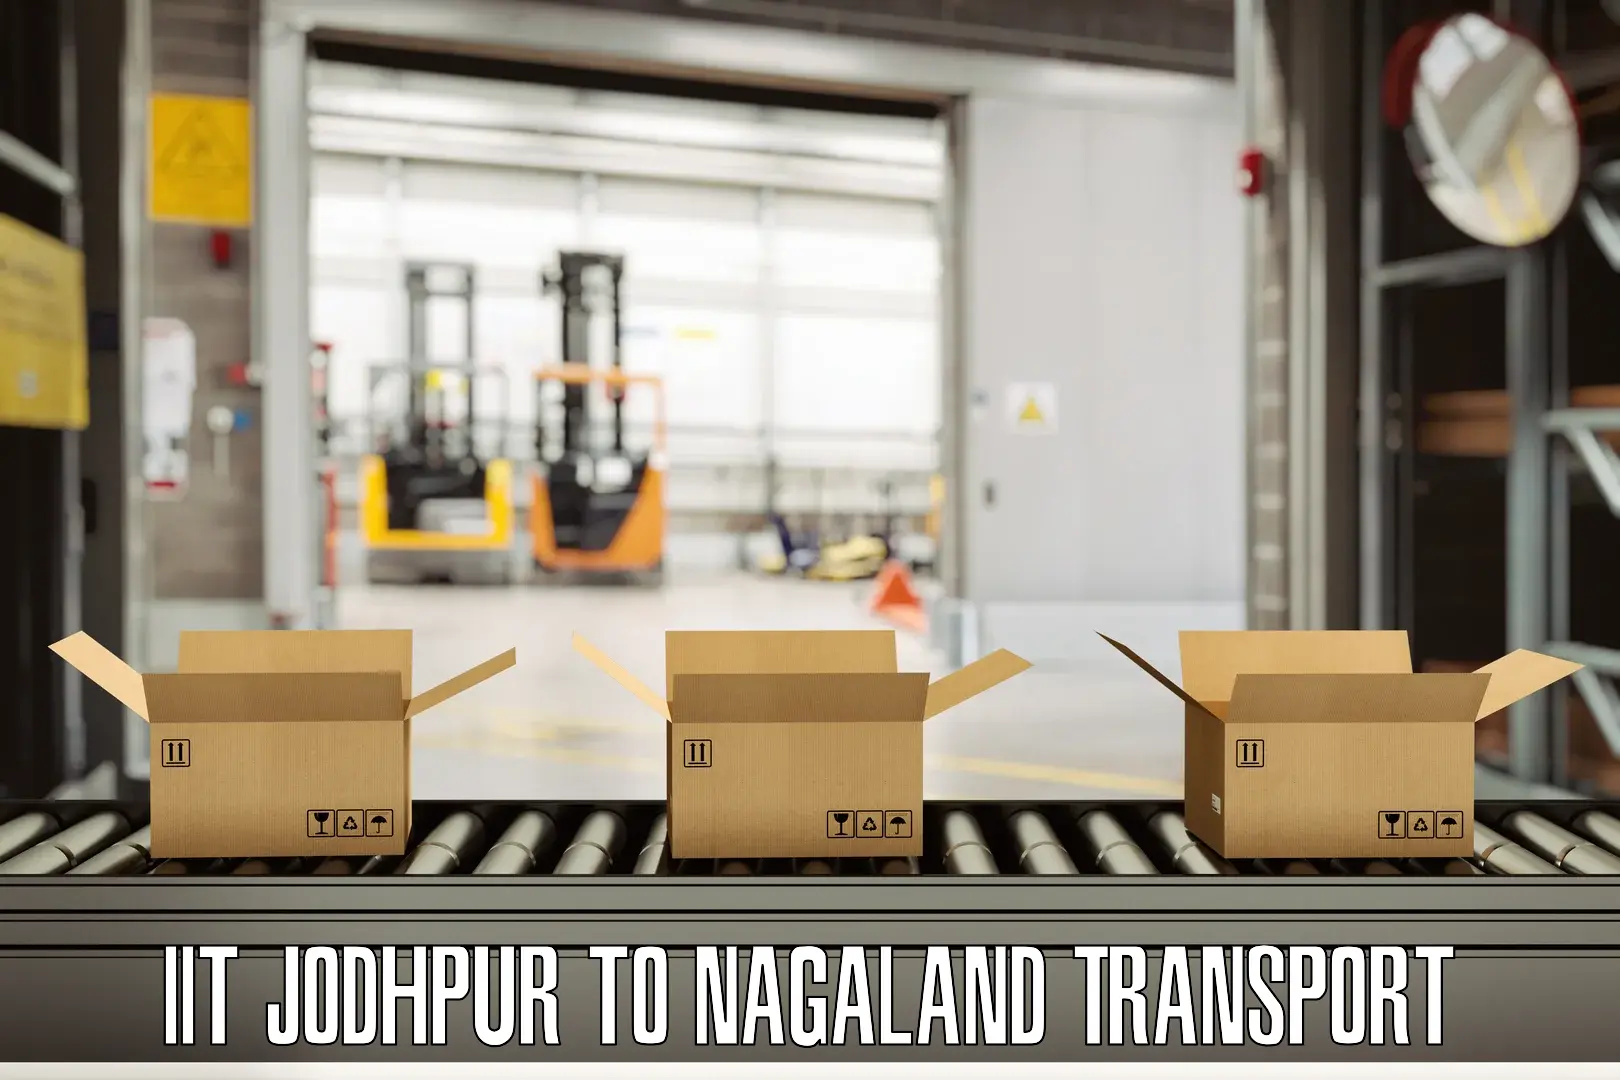 Nearest transport service IIT Jodhpur to Tuensang